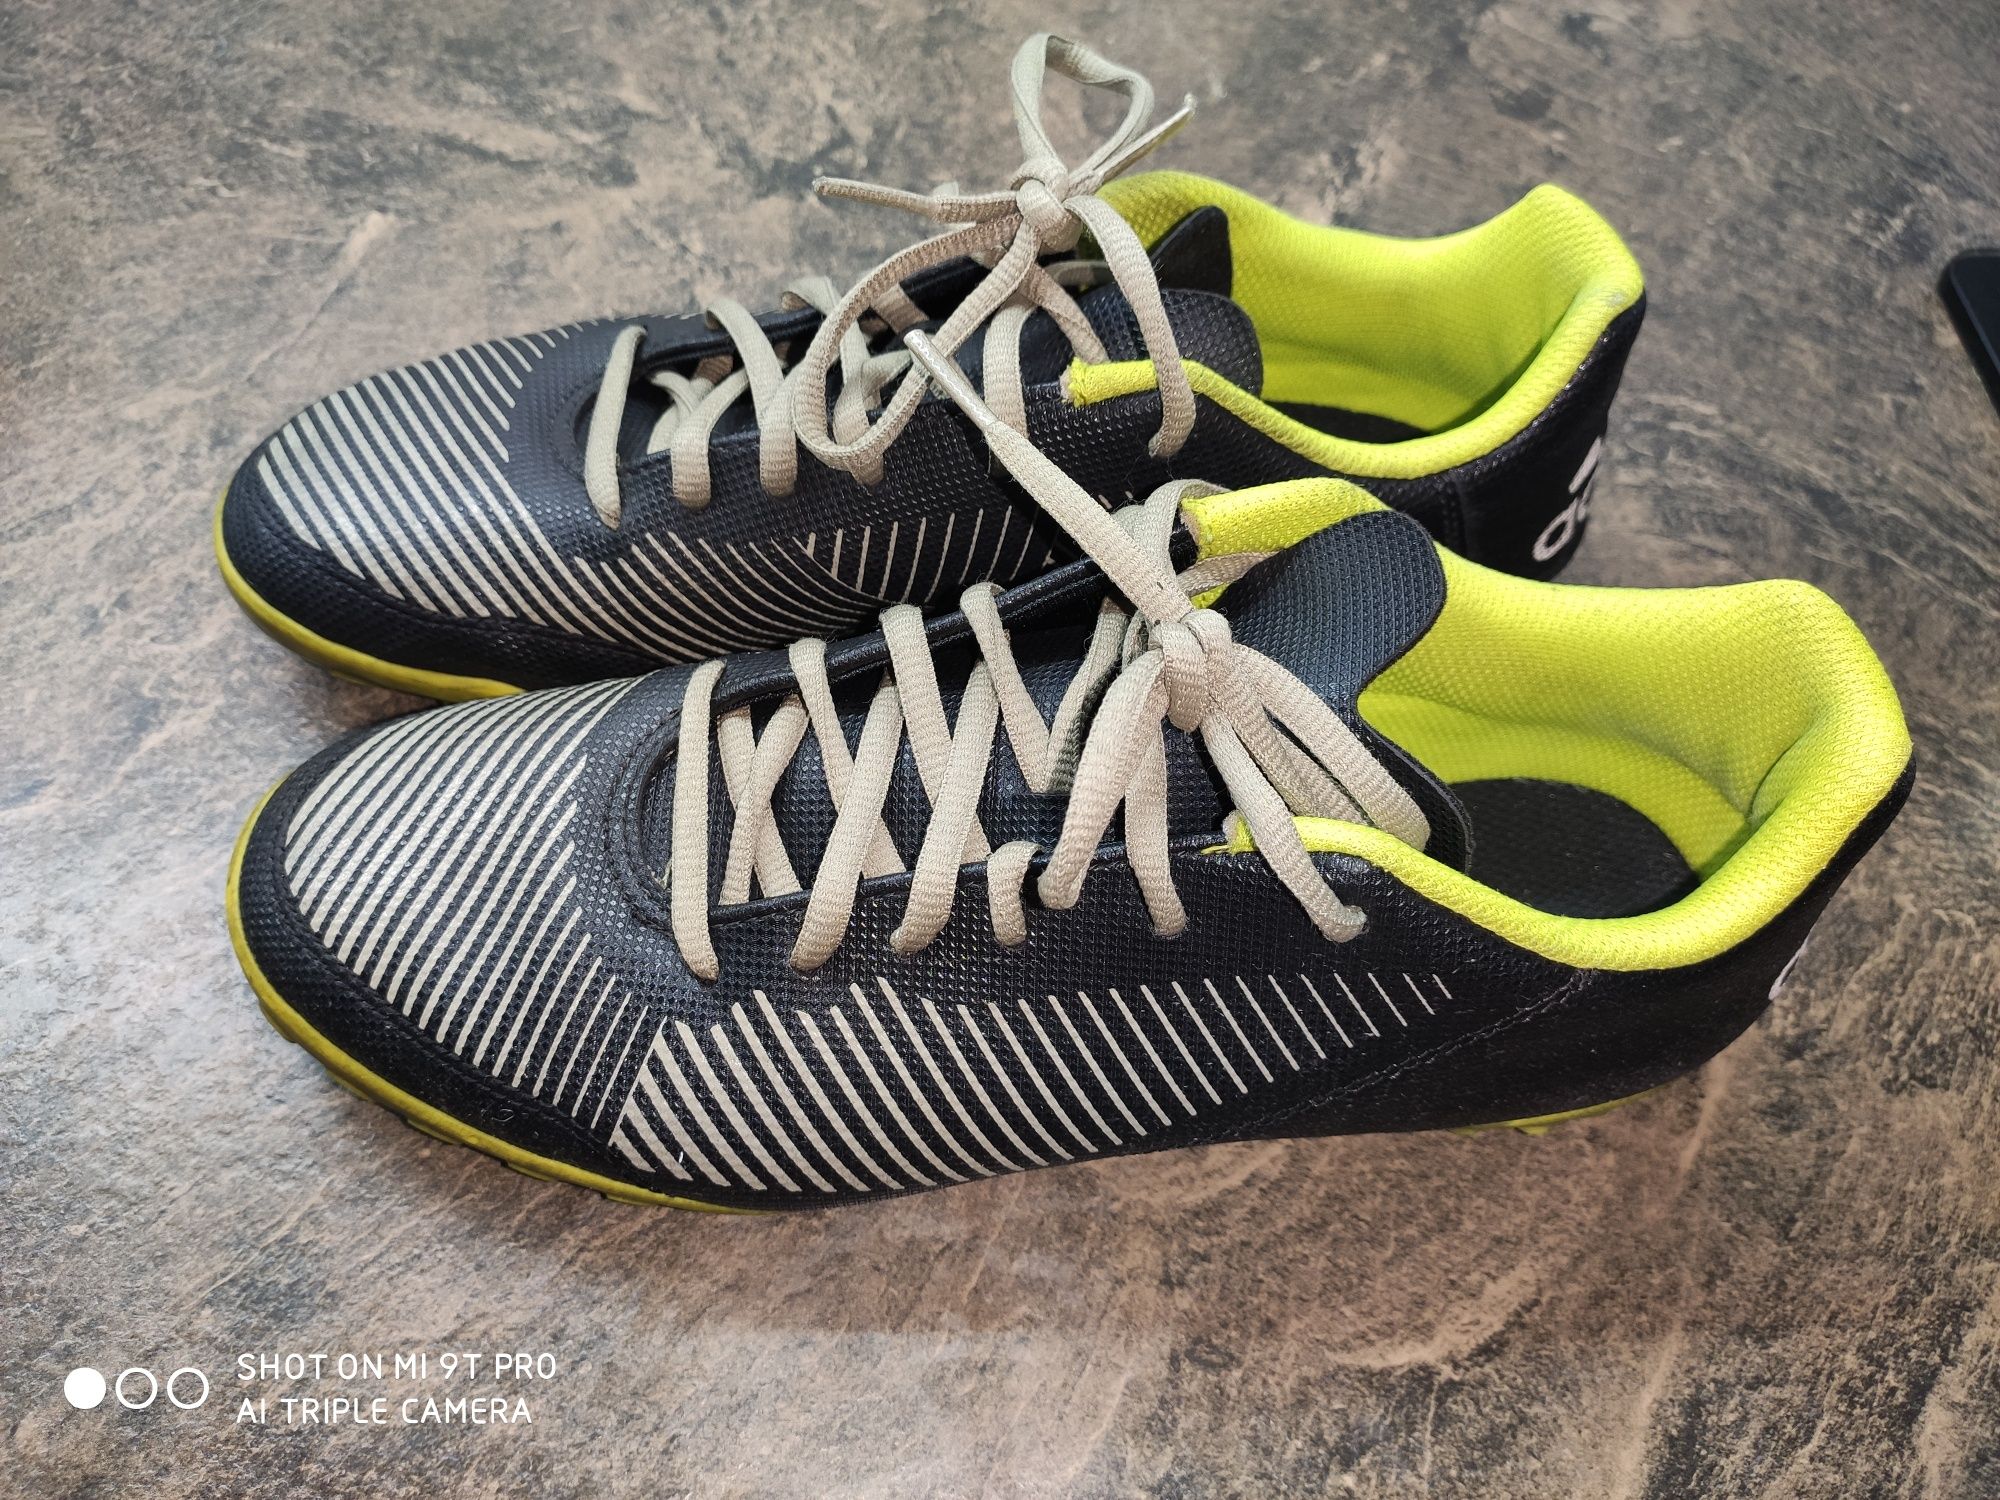 Adidas turfy buty piłkarskie